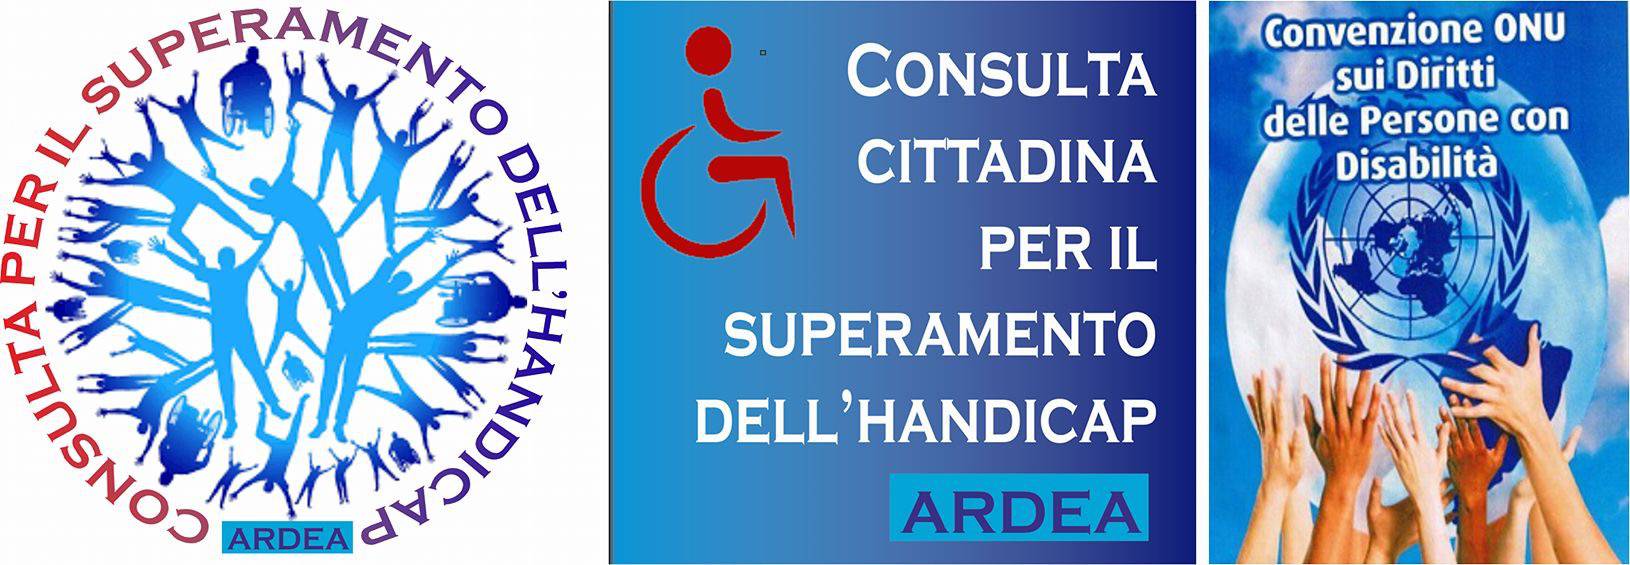 Ardea, consulta cittadina per il superamento dell’handicap, formati i gruppi di lavoro